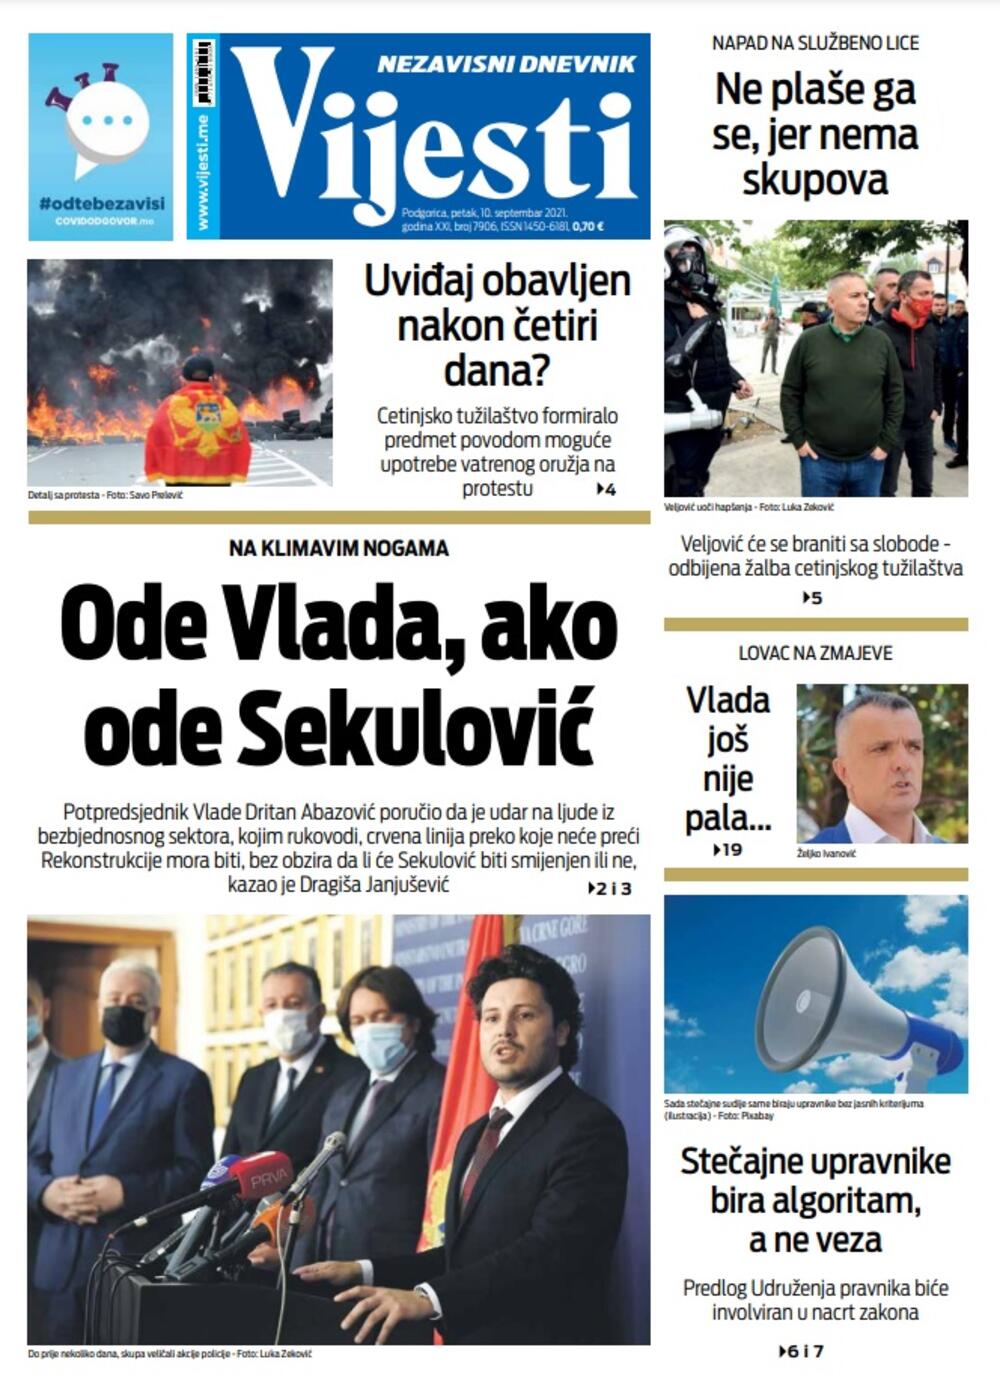 Naslovna strana "Vijesti" za 10. septembar 2021. godine, Foto: Vijesti